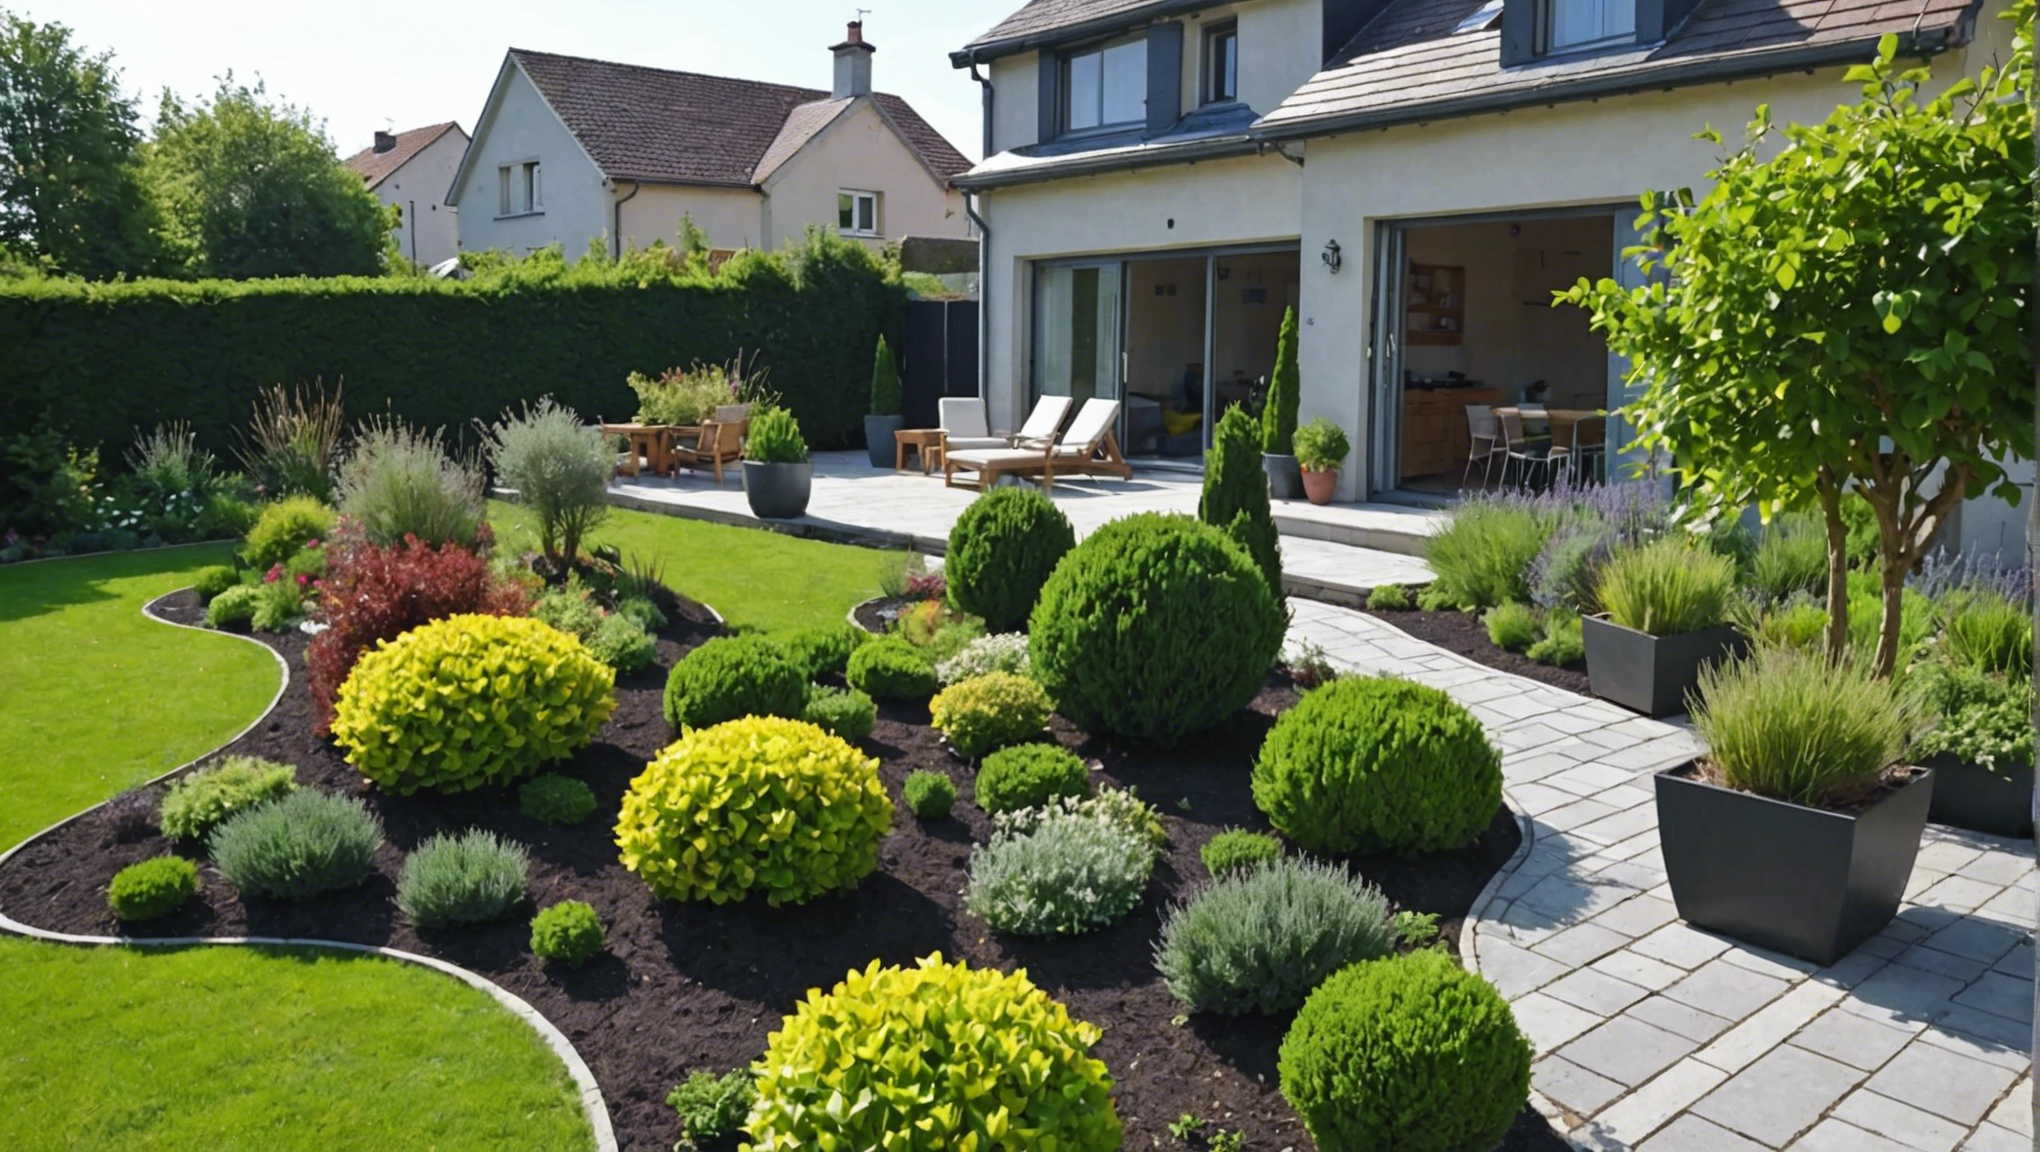 trouvez un paysagiste près de chez vous pour sublimer votre espace extérieur avec nos conseils pratiques et astuces utiles.